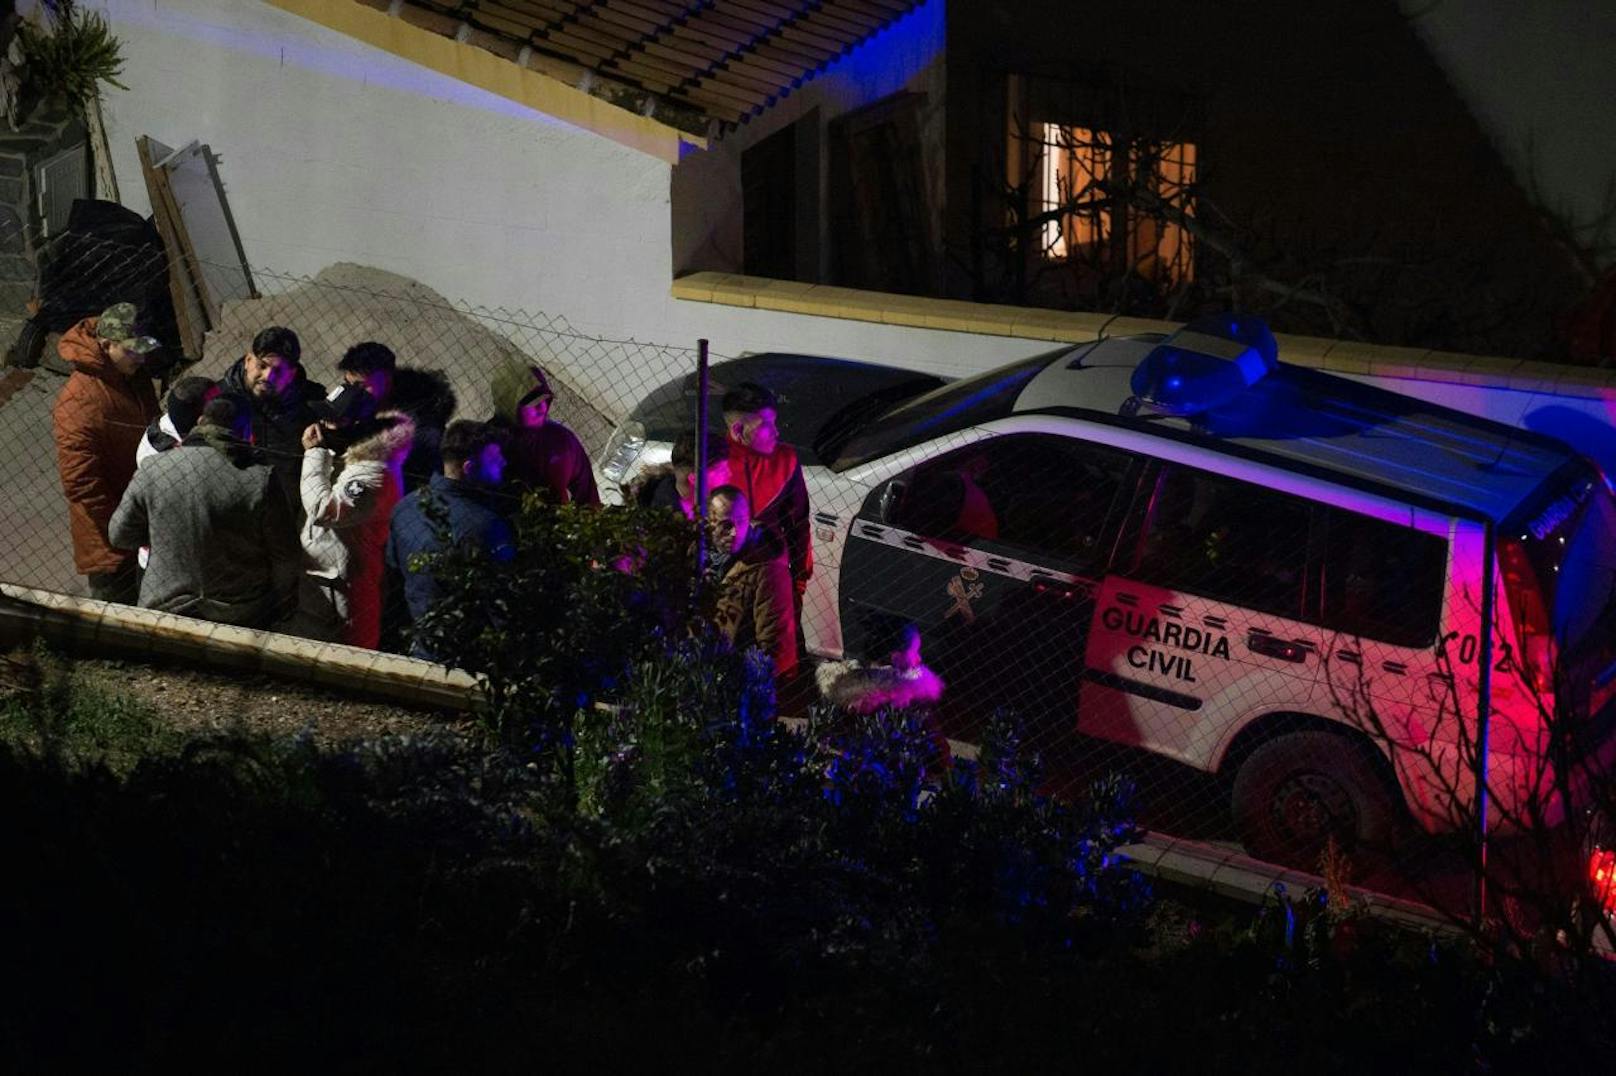 Familienangehörige von Julen in Totalán. Viele Menschen haben sich in der Nähe des Hauses eingefunden, nachdem der kleine Junge am frühen Samstagmorgen tot gefunden worden war.